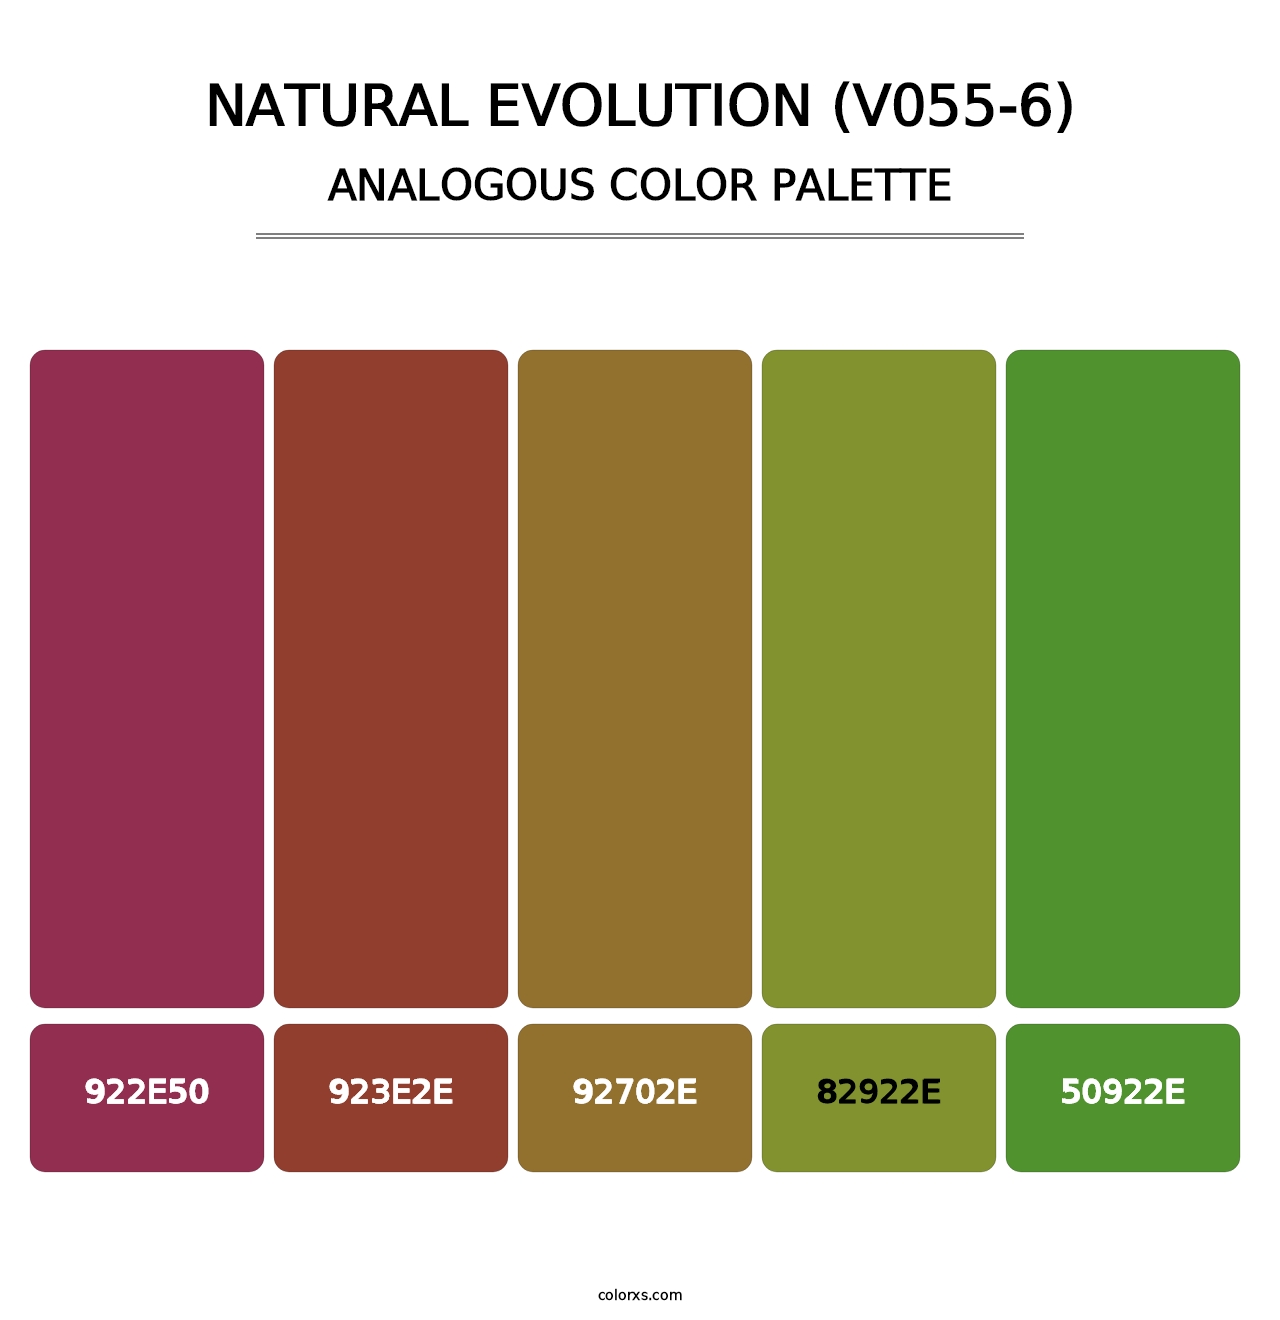 Natural Evolution (V055-6) - Analogous Color Palette